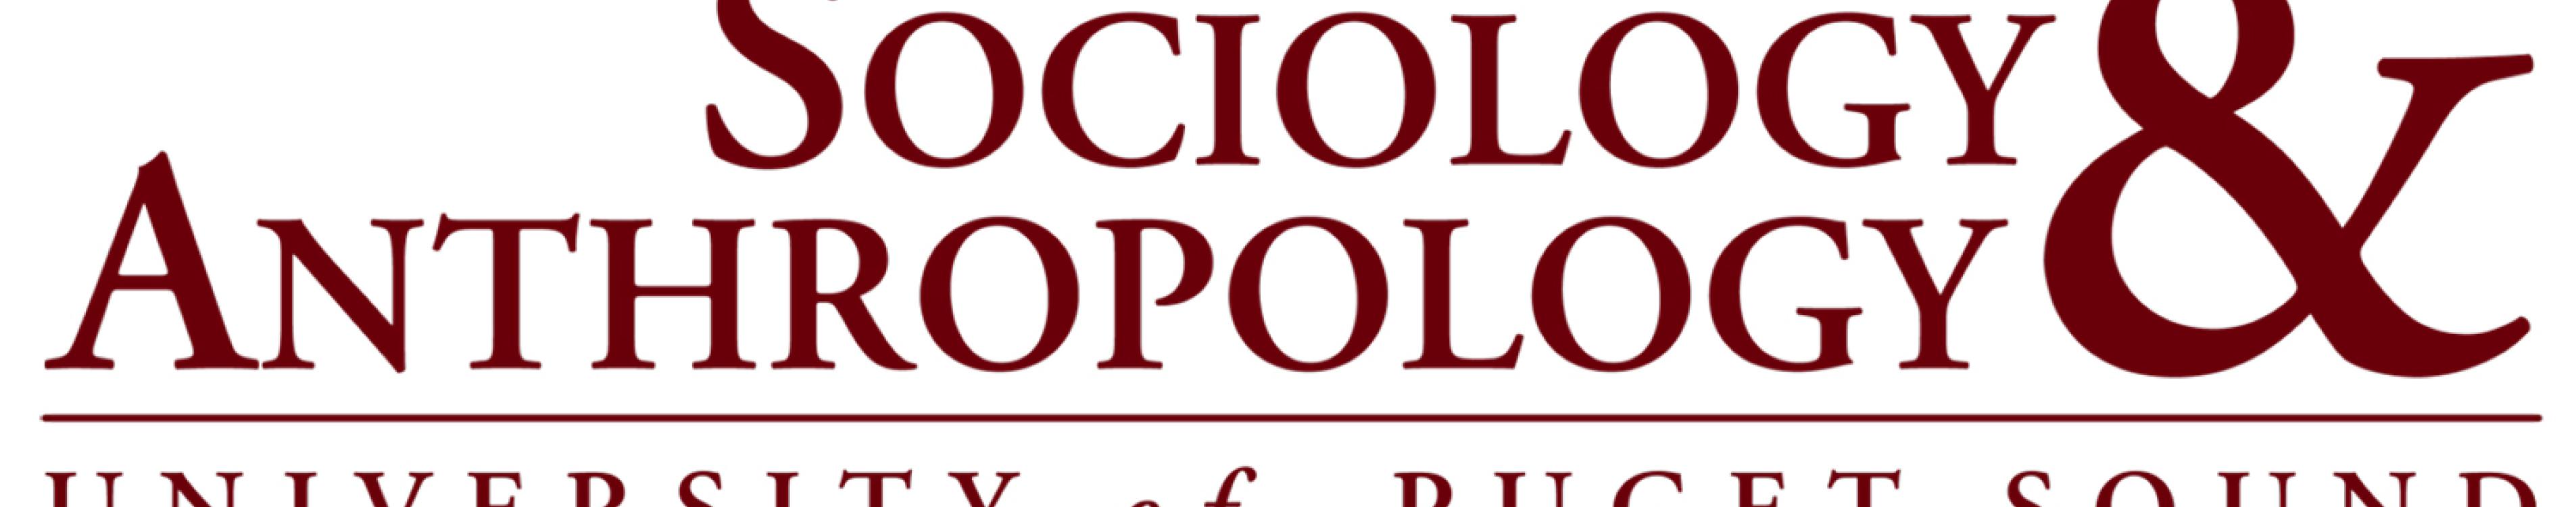 Sociology & Anthropology logo